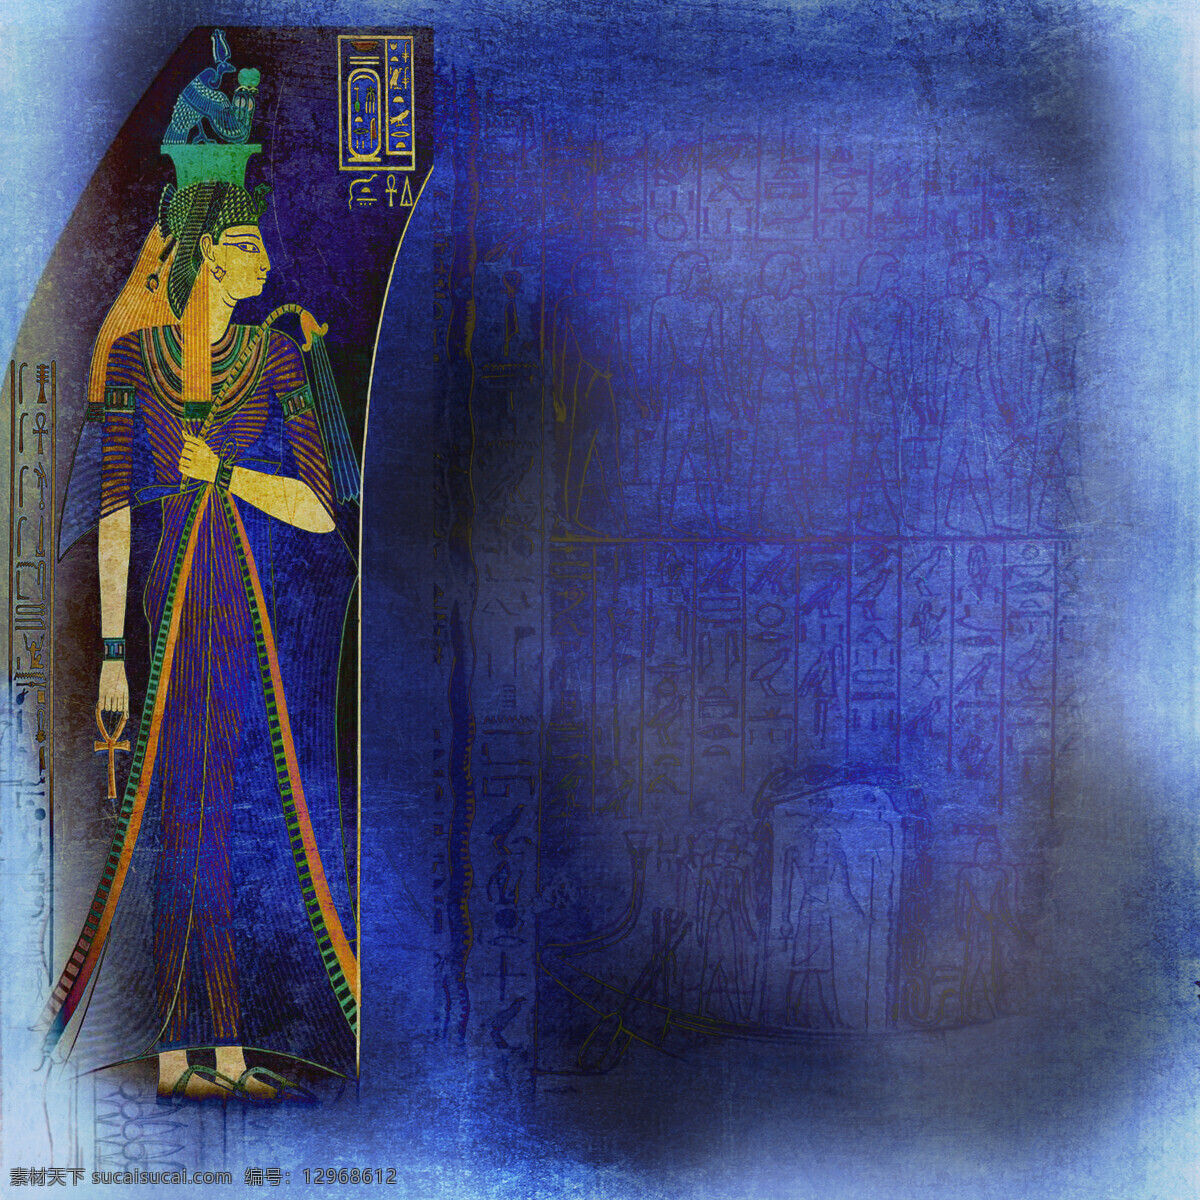 卡通埃及女性 埃及传统图案 埃及壁画 古埃及文化 其他艺术 文化艺术 蓝色